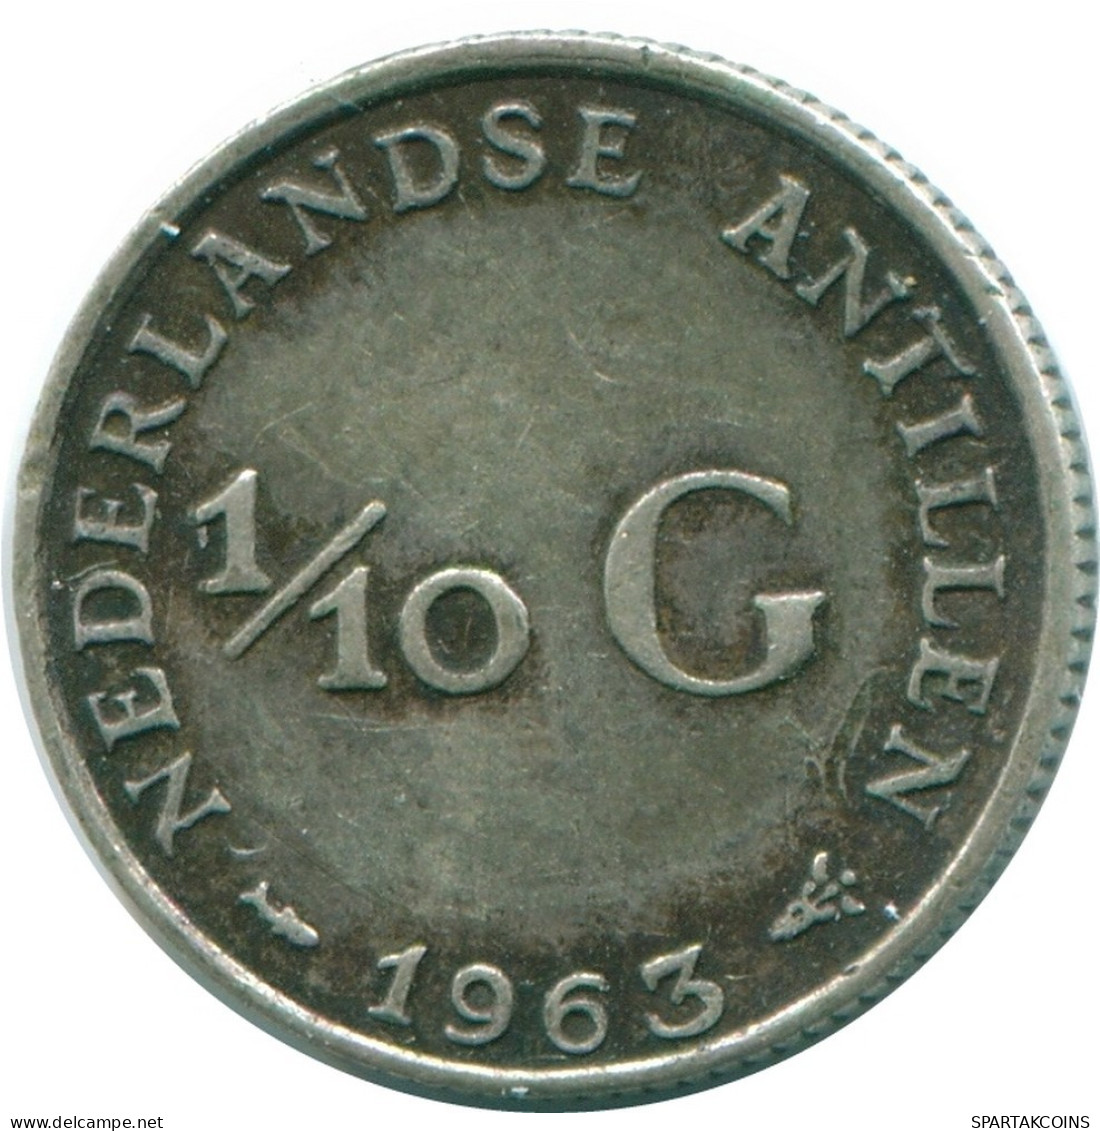 1/10 GULDEN 1963 NIEDERLÄNDISCHE ANTILLEN SILBER Koloniale Münze #NL12611.3.D.A - Antilles Néerlandaises